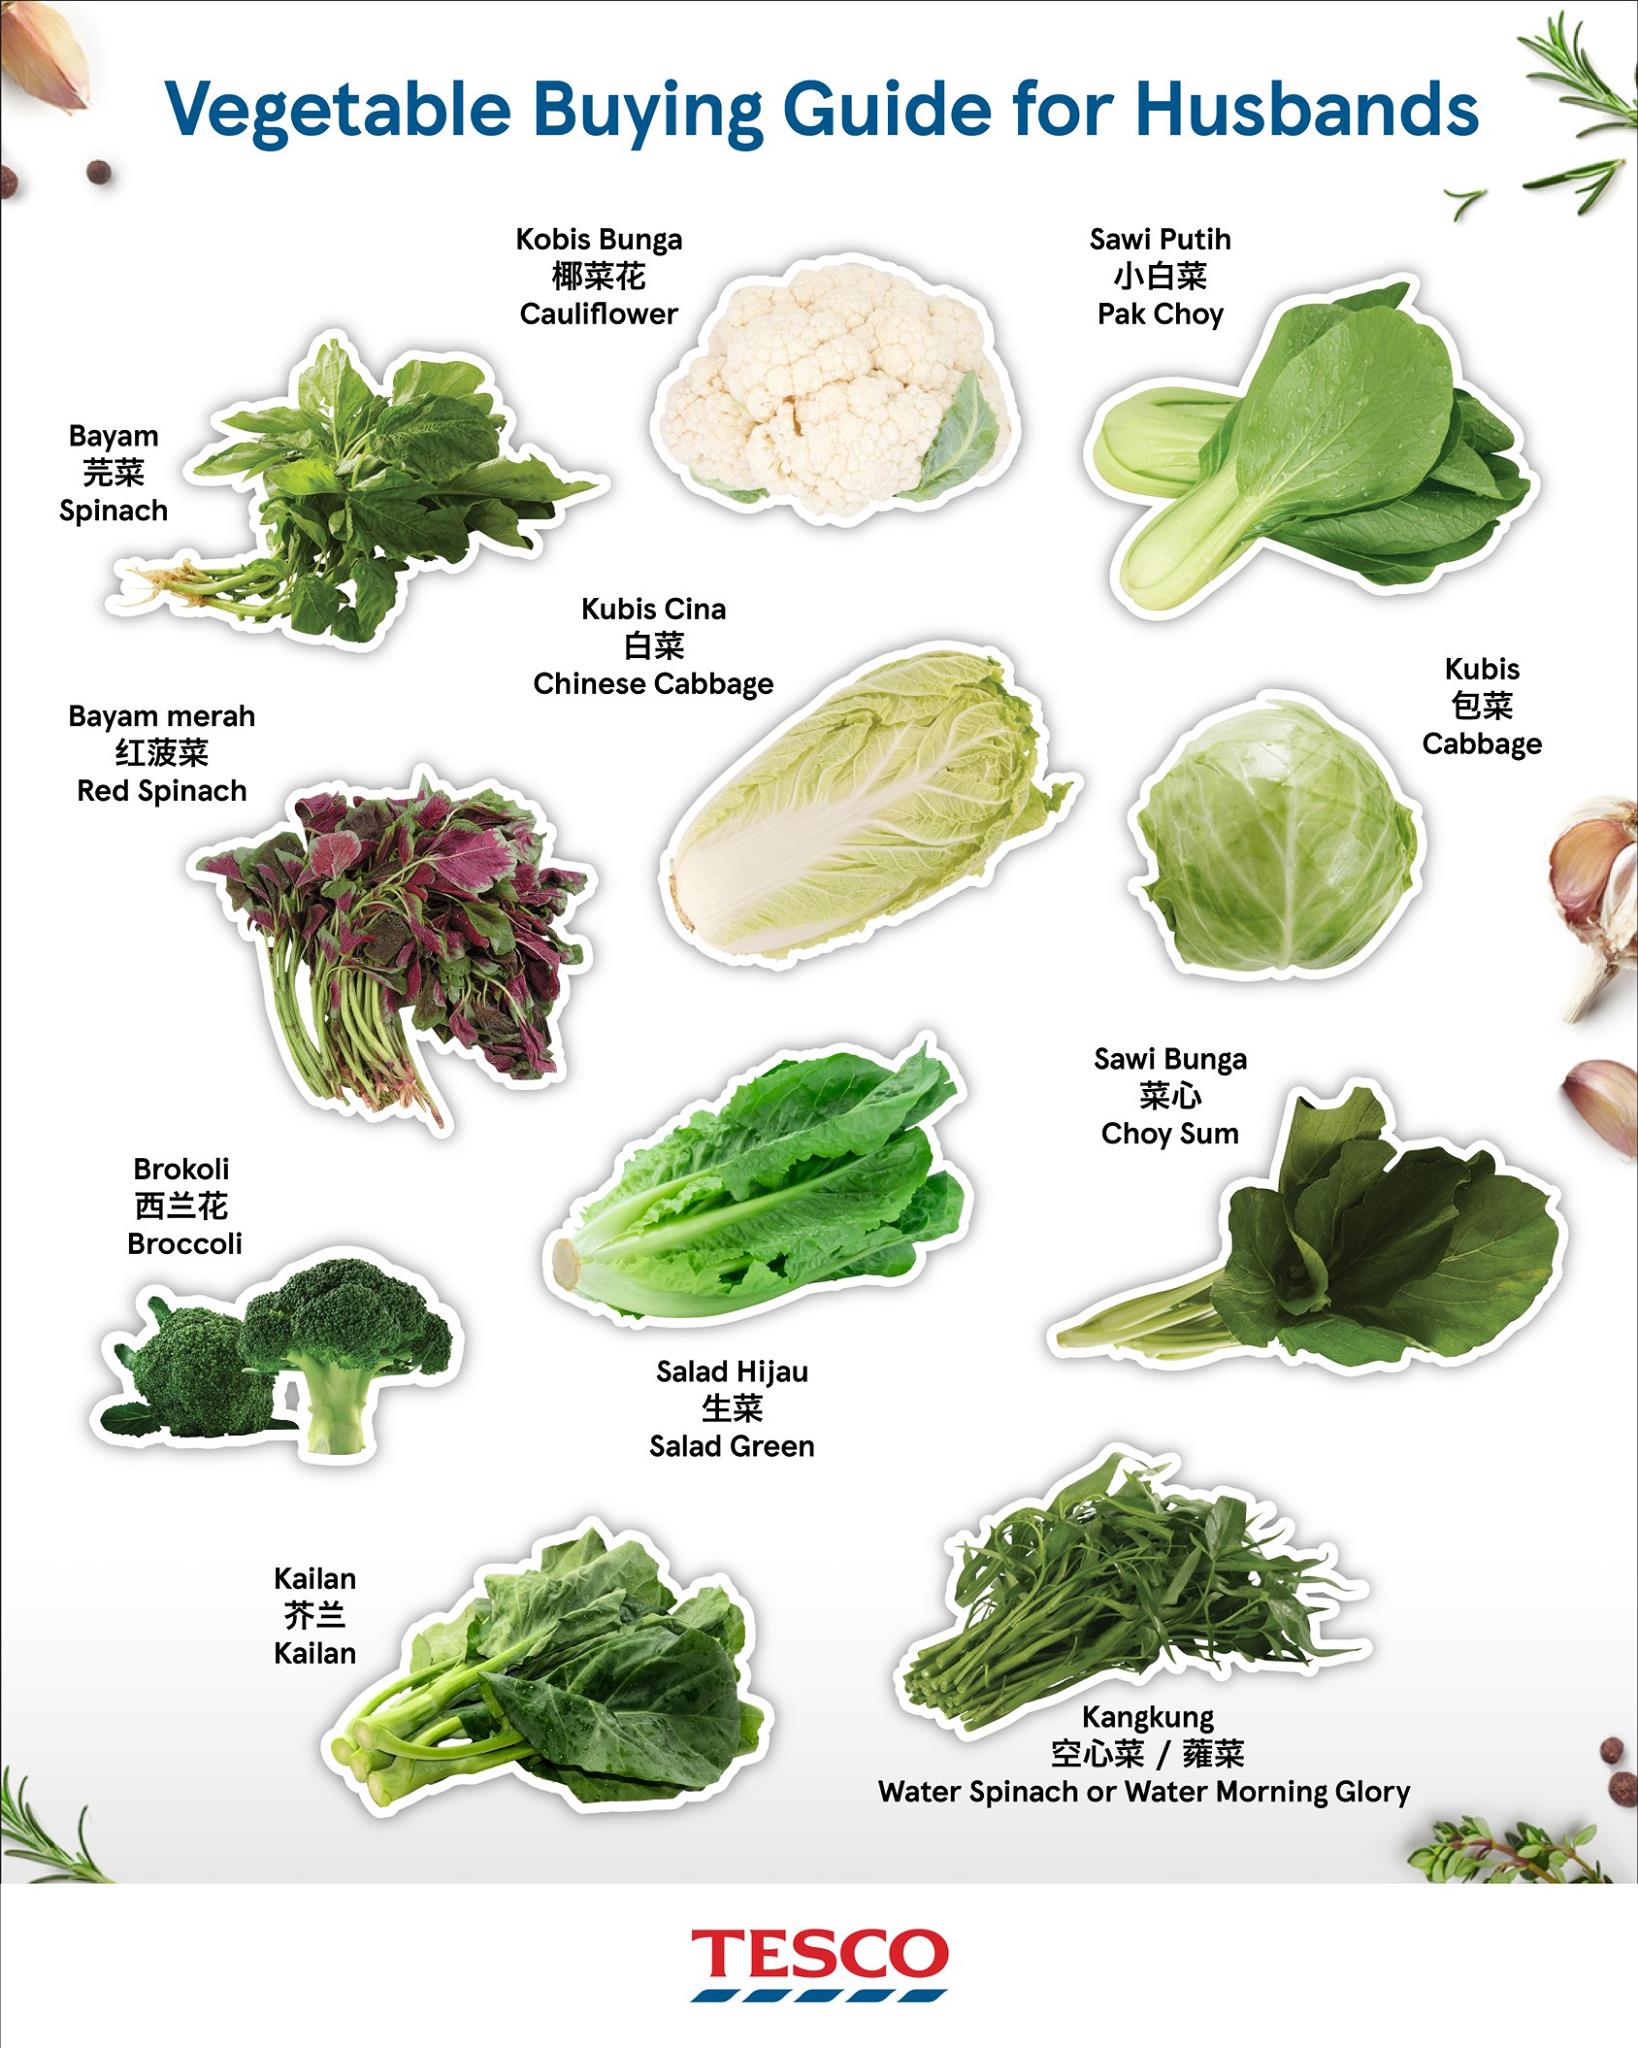 100种蔬菜大全名称图片